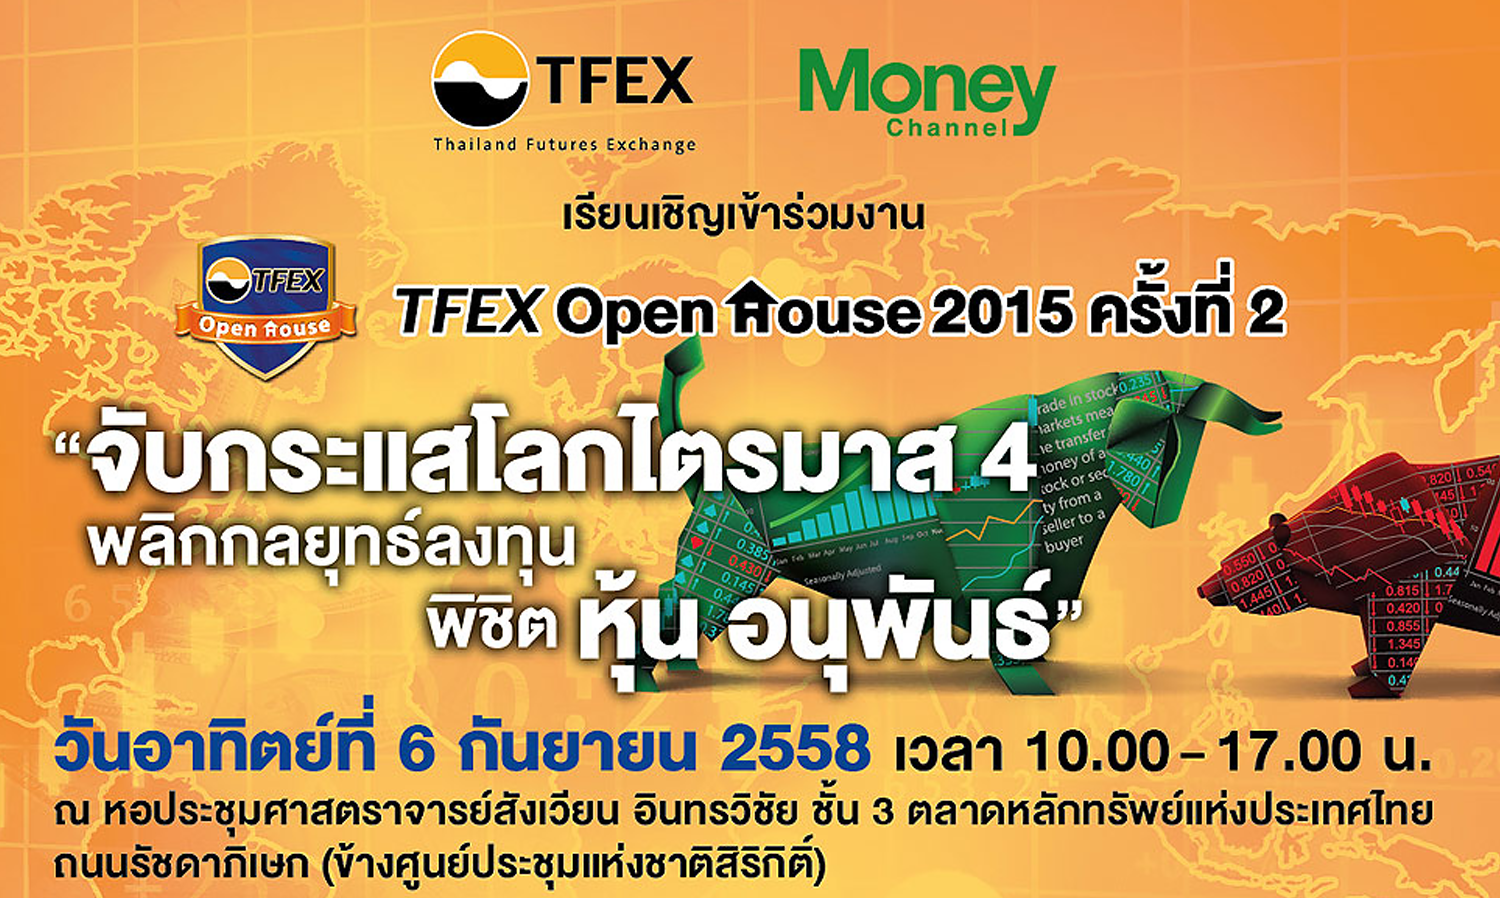 ชวนร่วมงาน TFEX Open House 2015 ครั้งที่ 2 วันที่ 6 ก.ย. นี้